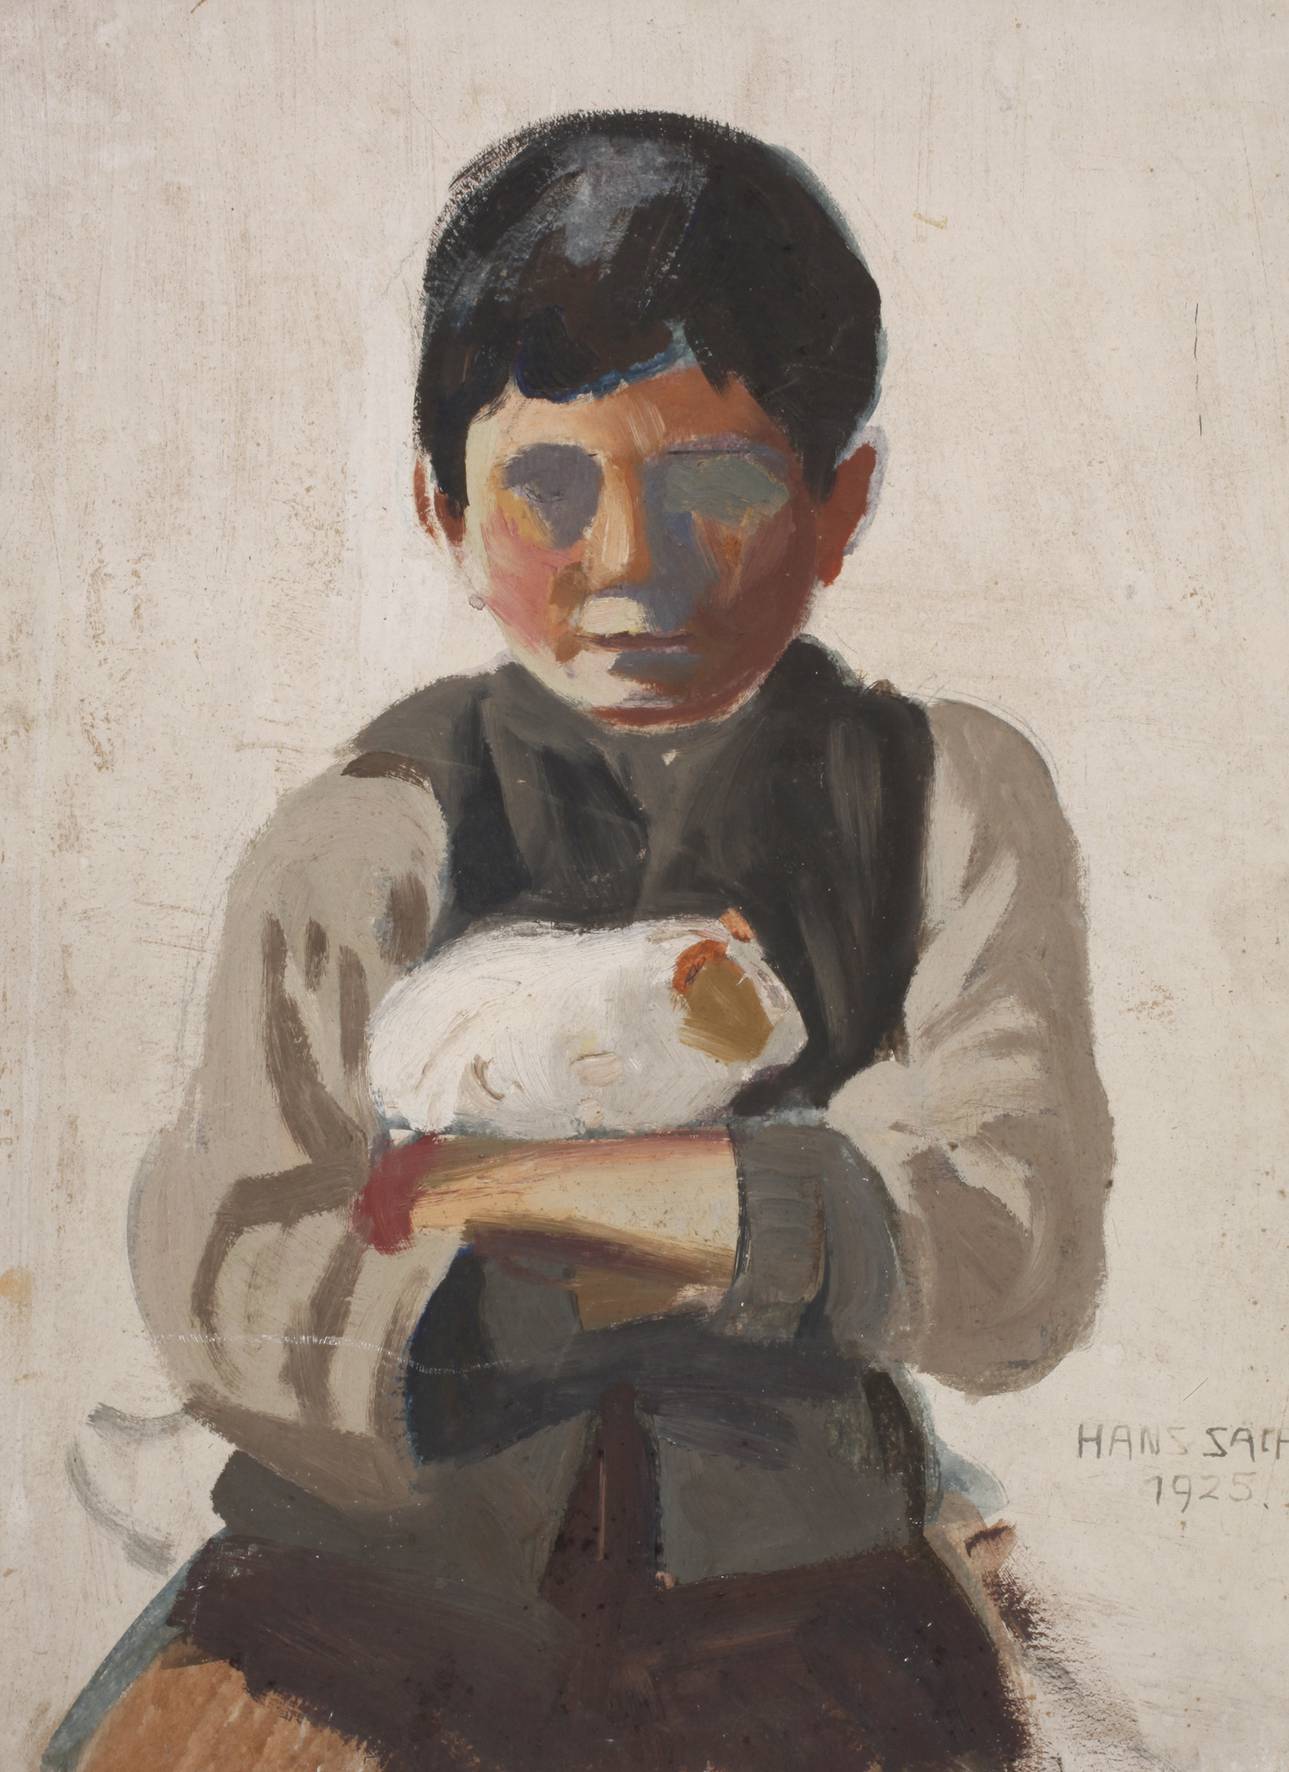 Hans Sachs, Kind mit Meerschweinchen